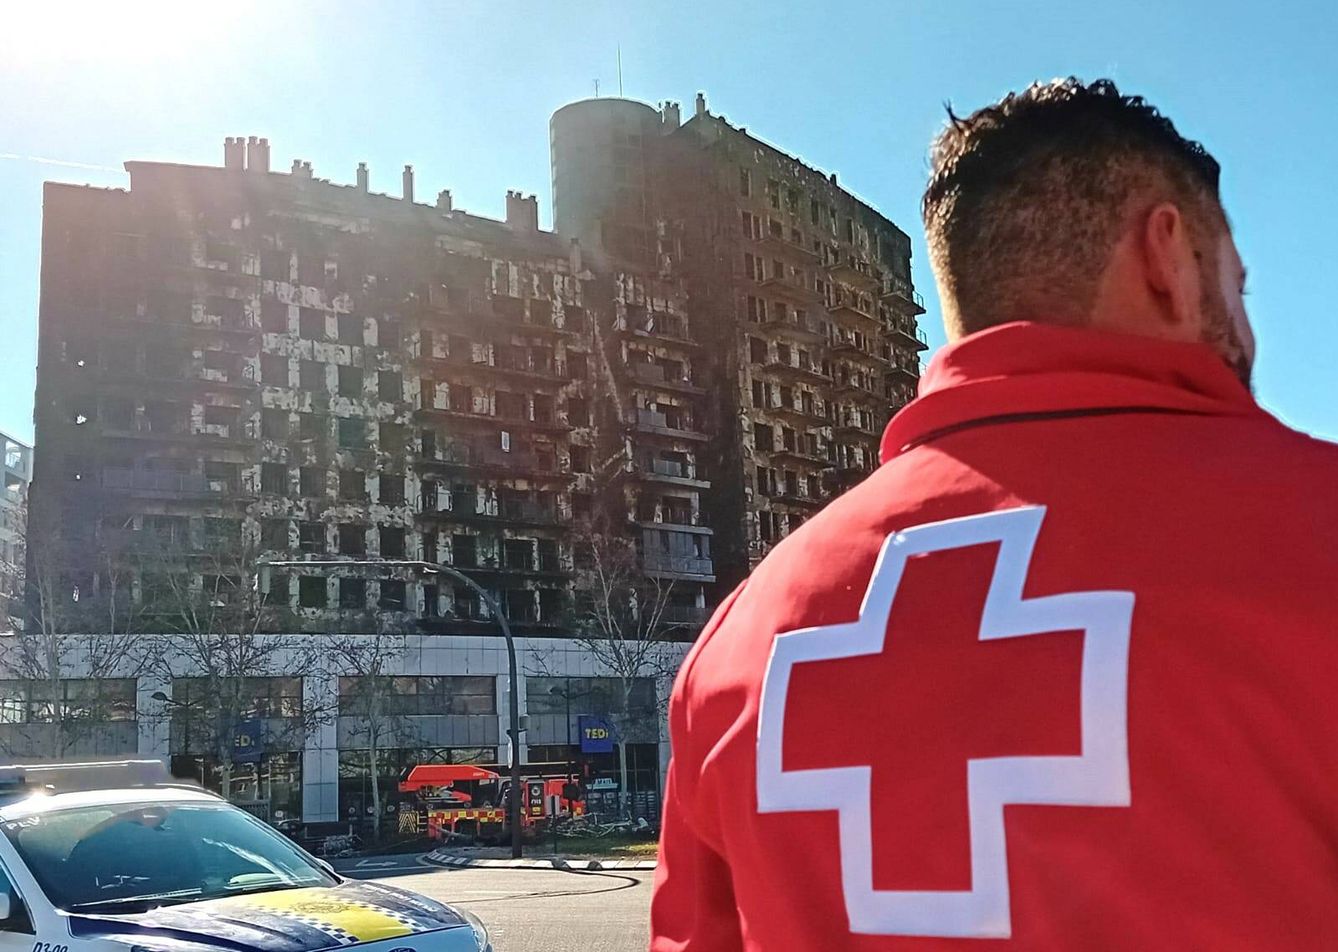 Mario Saiz forma parte del equipo de emergencias sociosanitarias que atiene desde anoche a los afectados por el incendio. En la imagen, aparece junto al edificio calcinado. (Cedida)